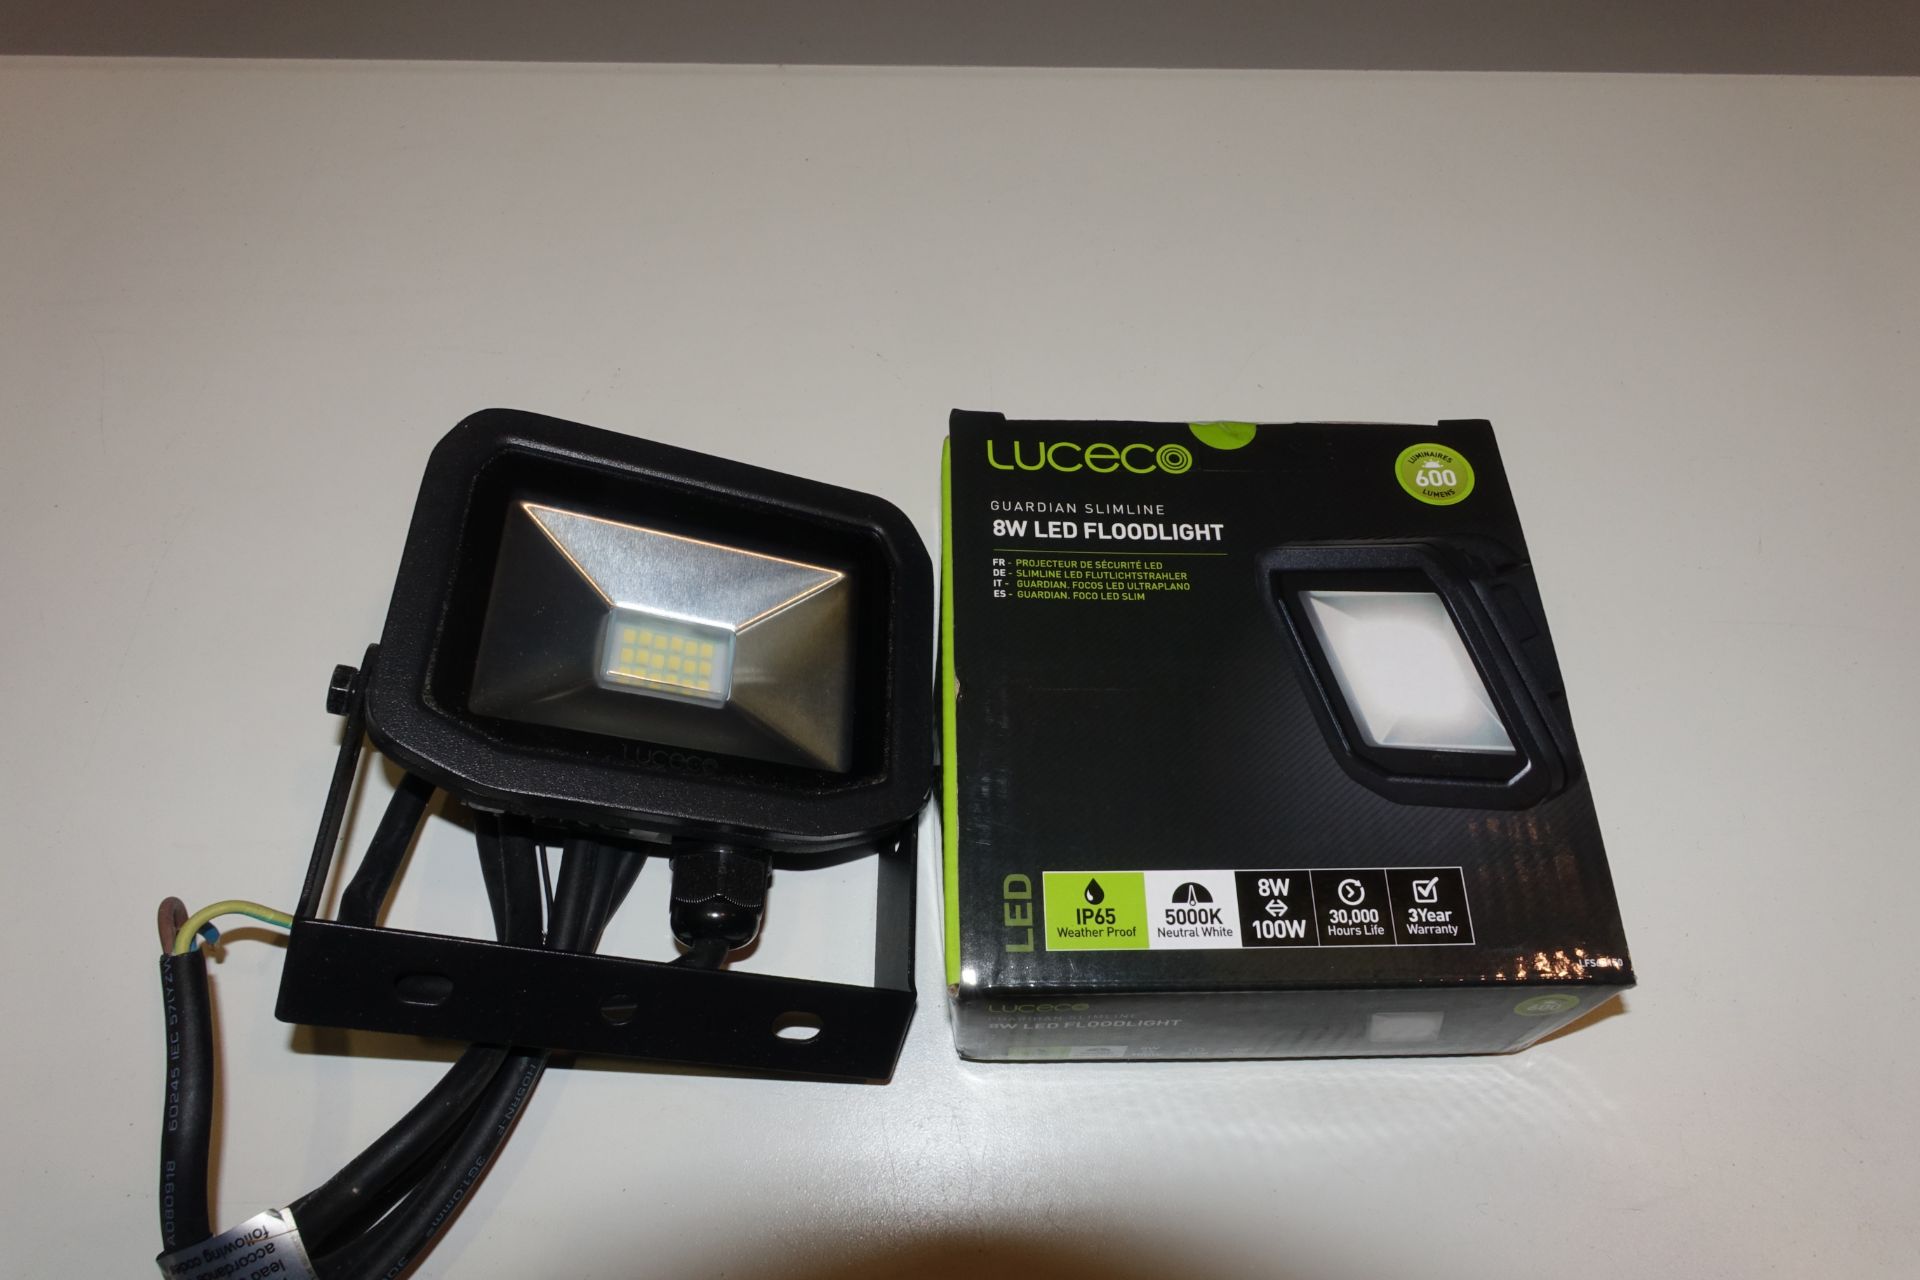 30 x LUCECO LFS6B150 - 03 (JX) 8W LED Floodlights 5000k 600 Lumen Black Finish